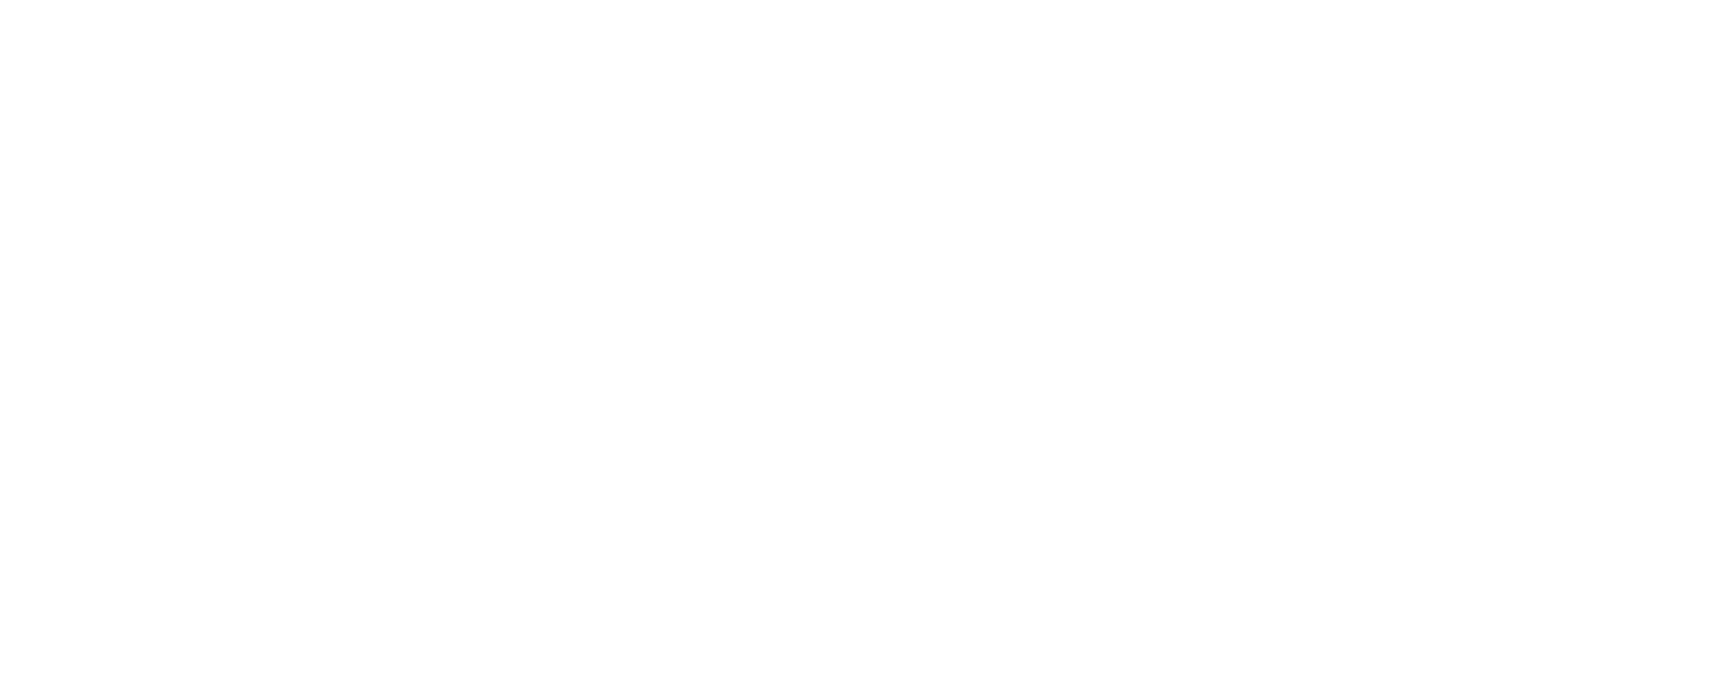 BoomTown Logo